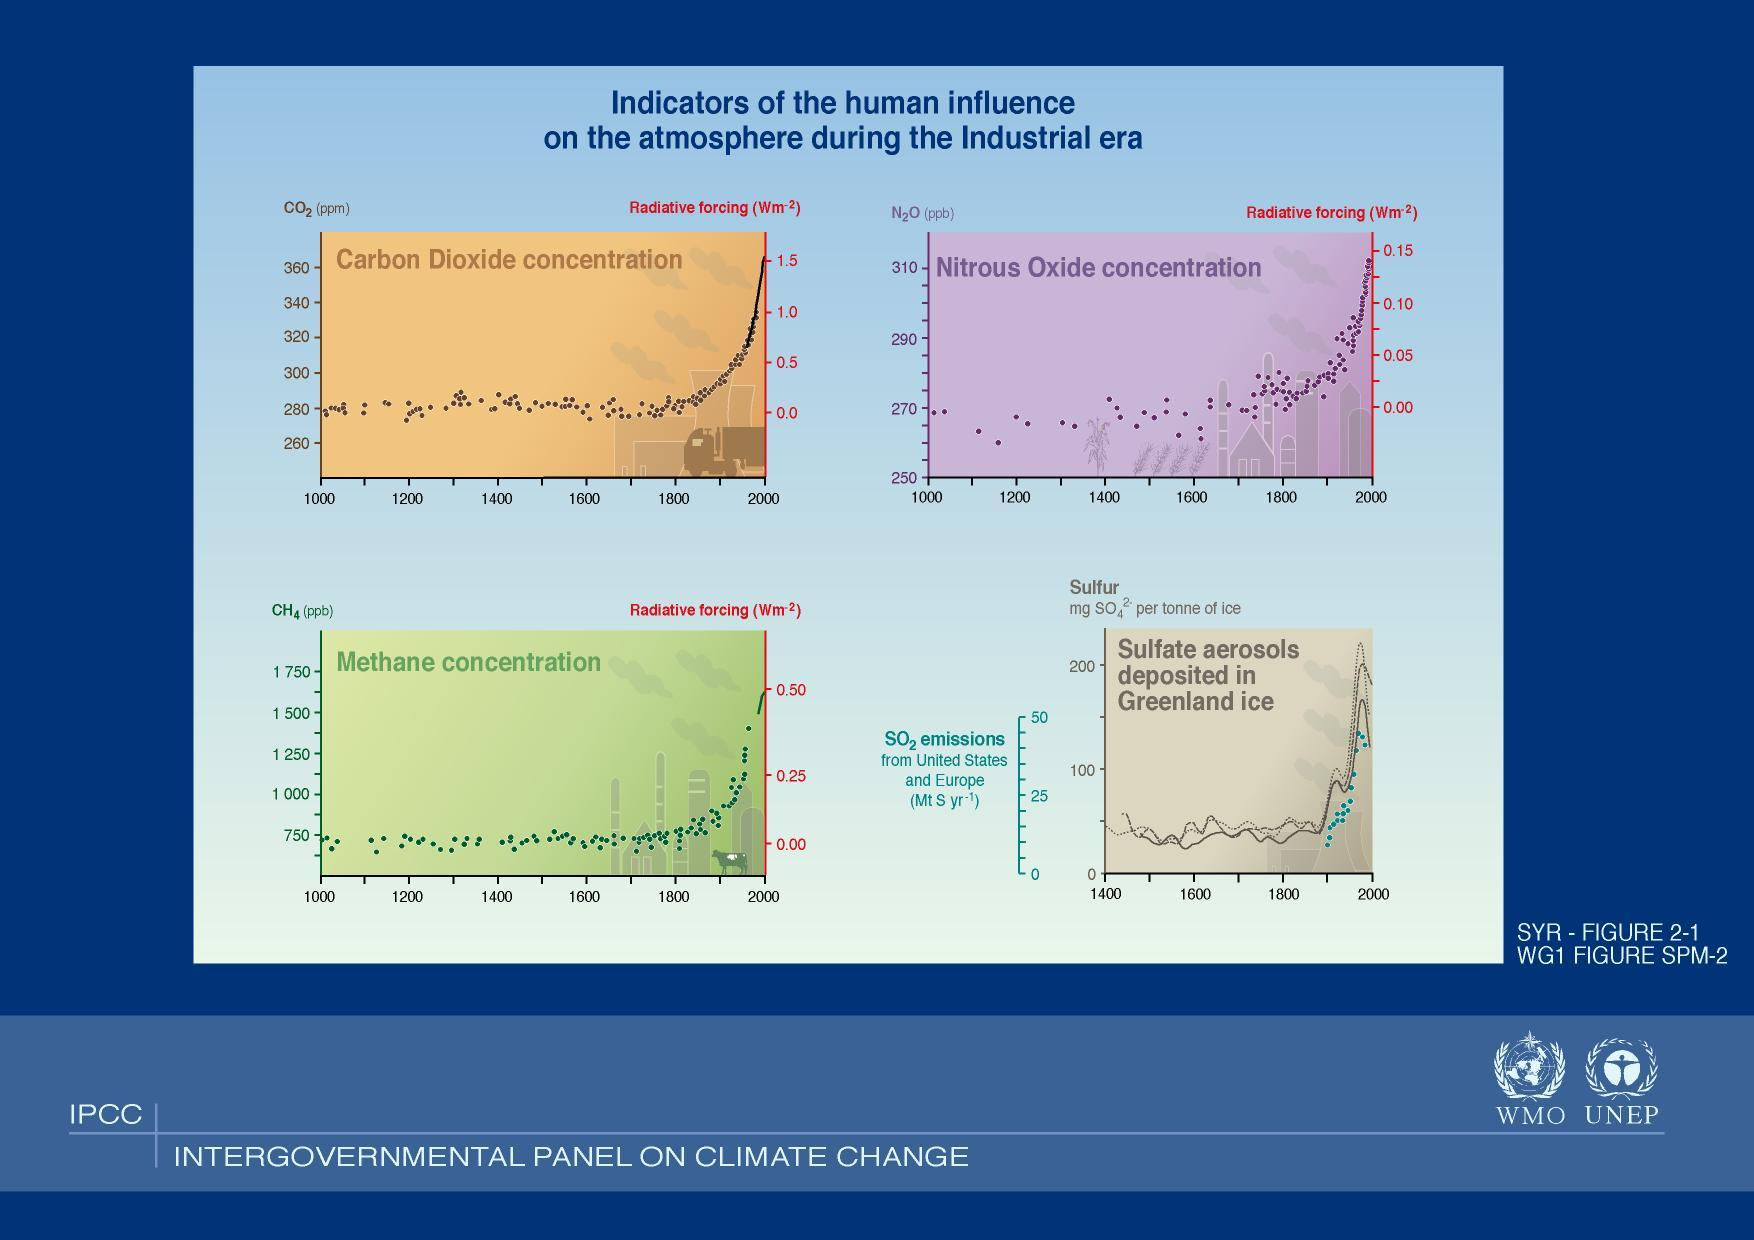 Τι πποκάλεσε την αύξηση τηρ Θεπμοκπασίαρ τον τελεςταίο αιώνα ; Πεγή: http://www.grida.no/climate/ipcc_tar/slides/large/02.01.